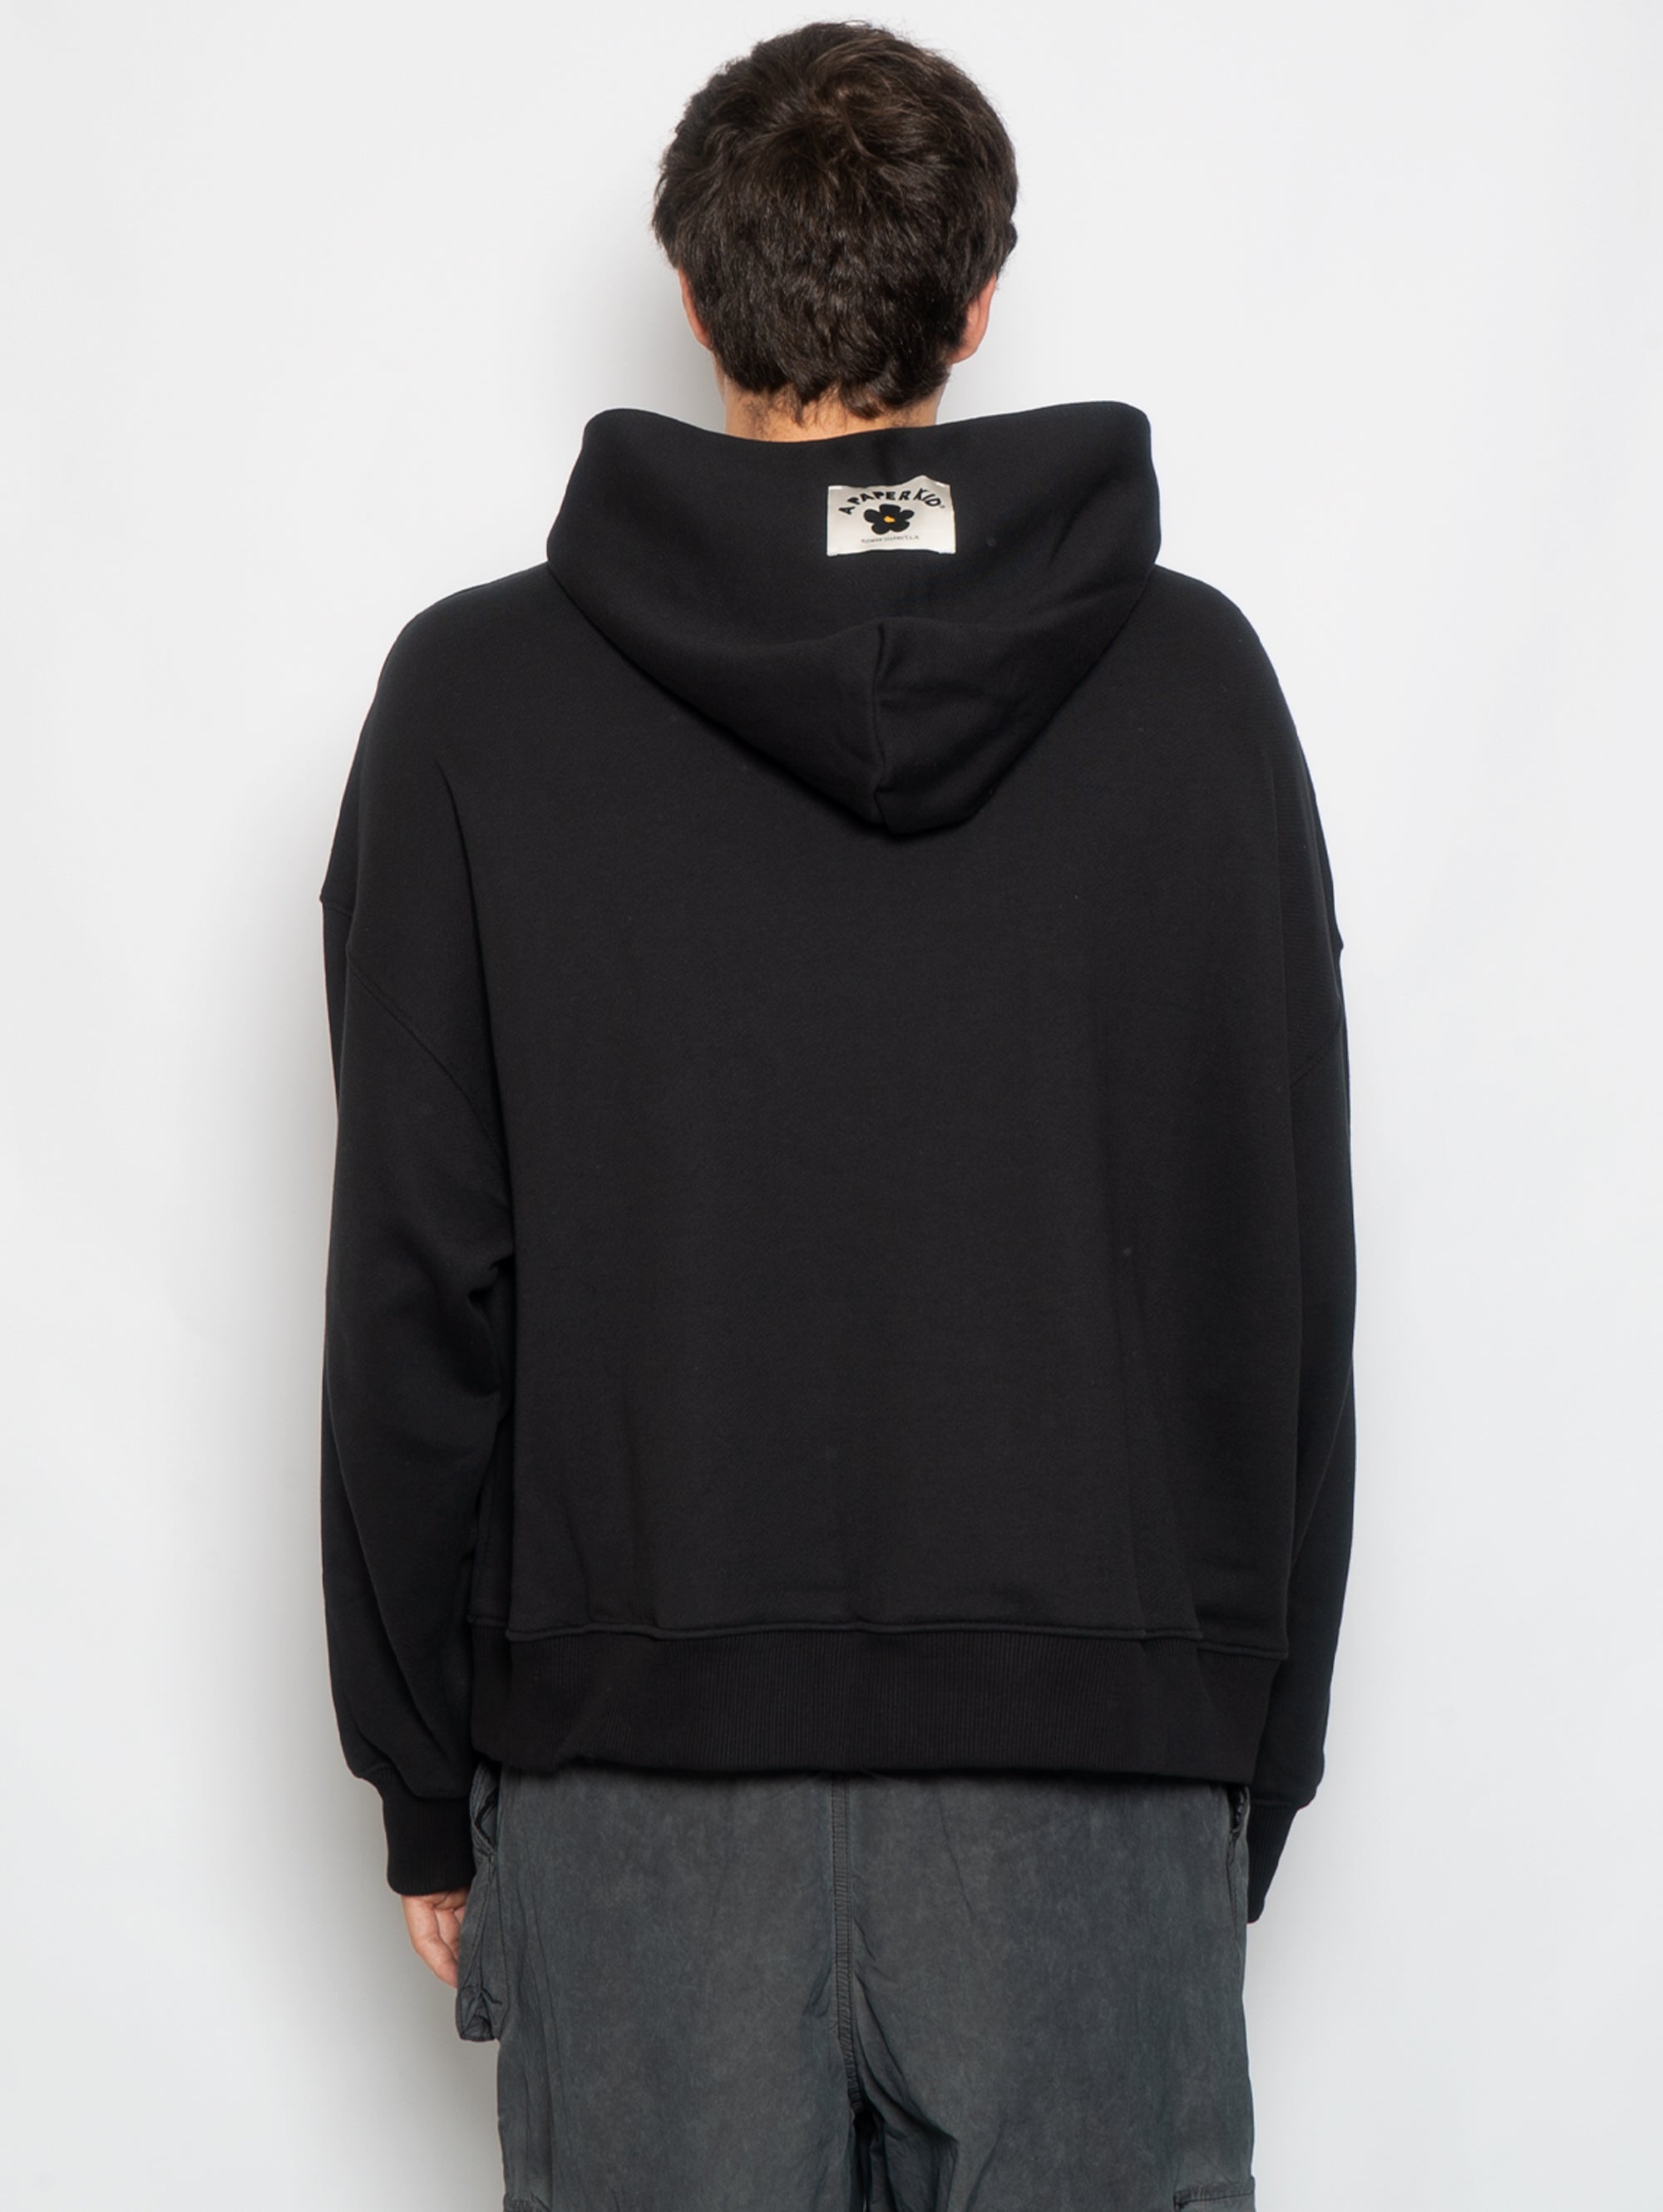 Sweatshirt mit schwarzer Kapuze